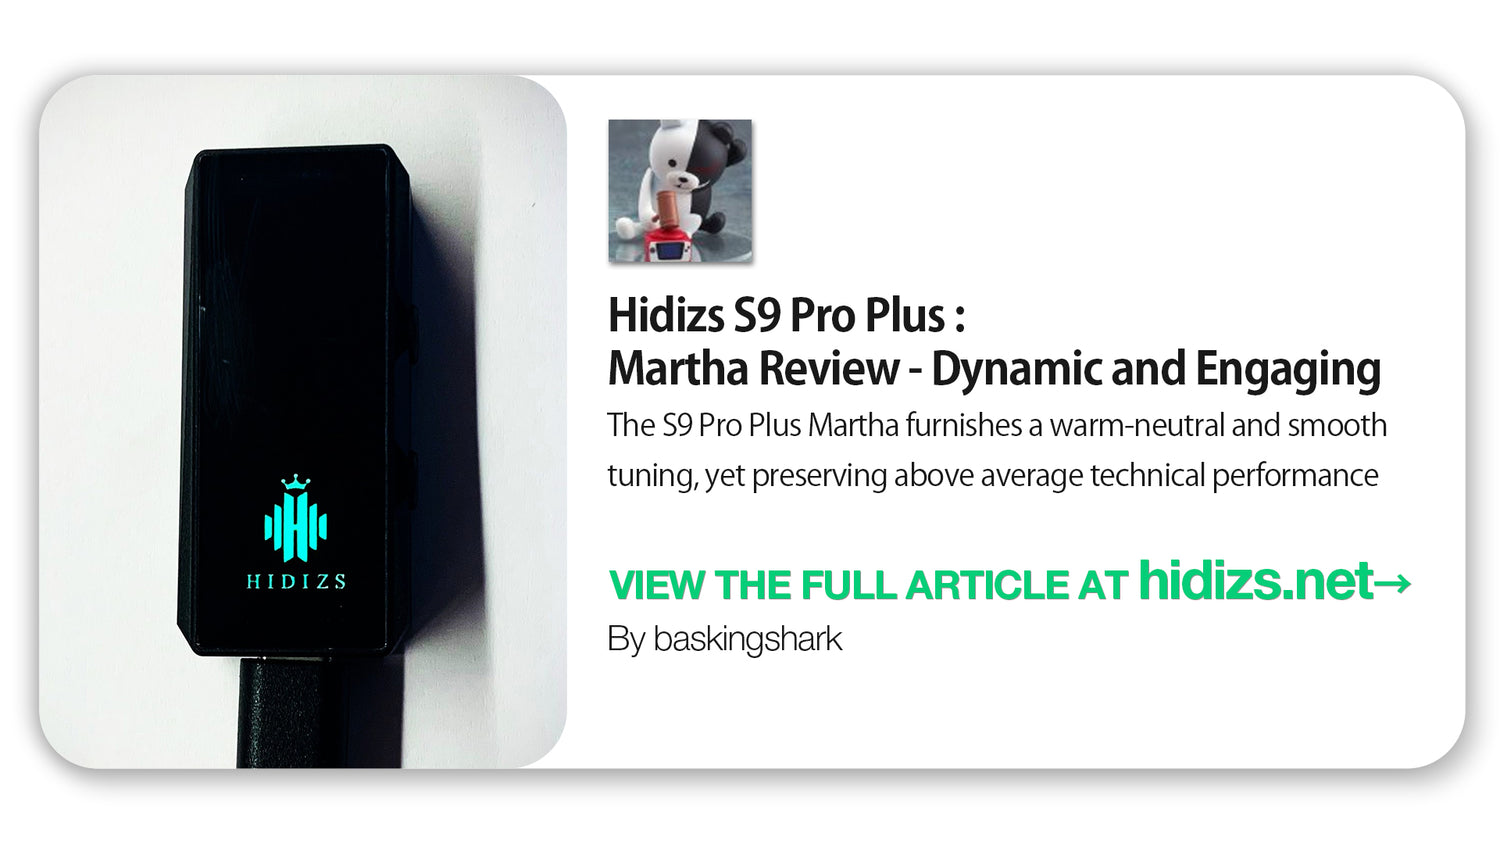 Hidizs S9 Pro Plus Martha Review - baskingshark